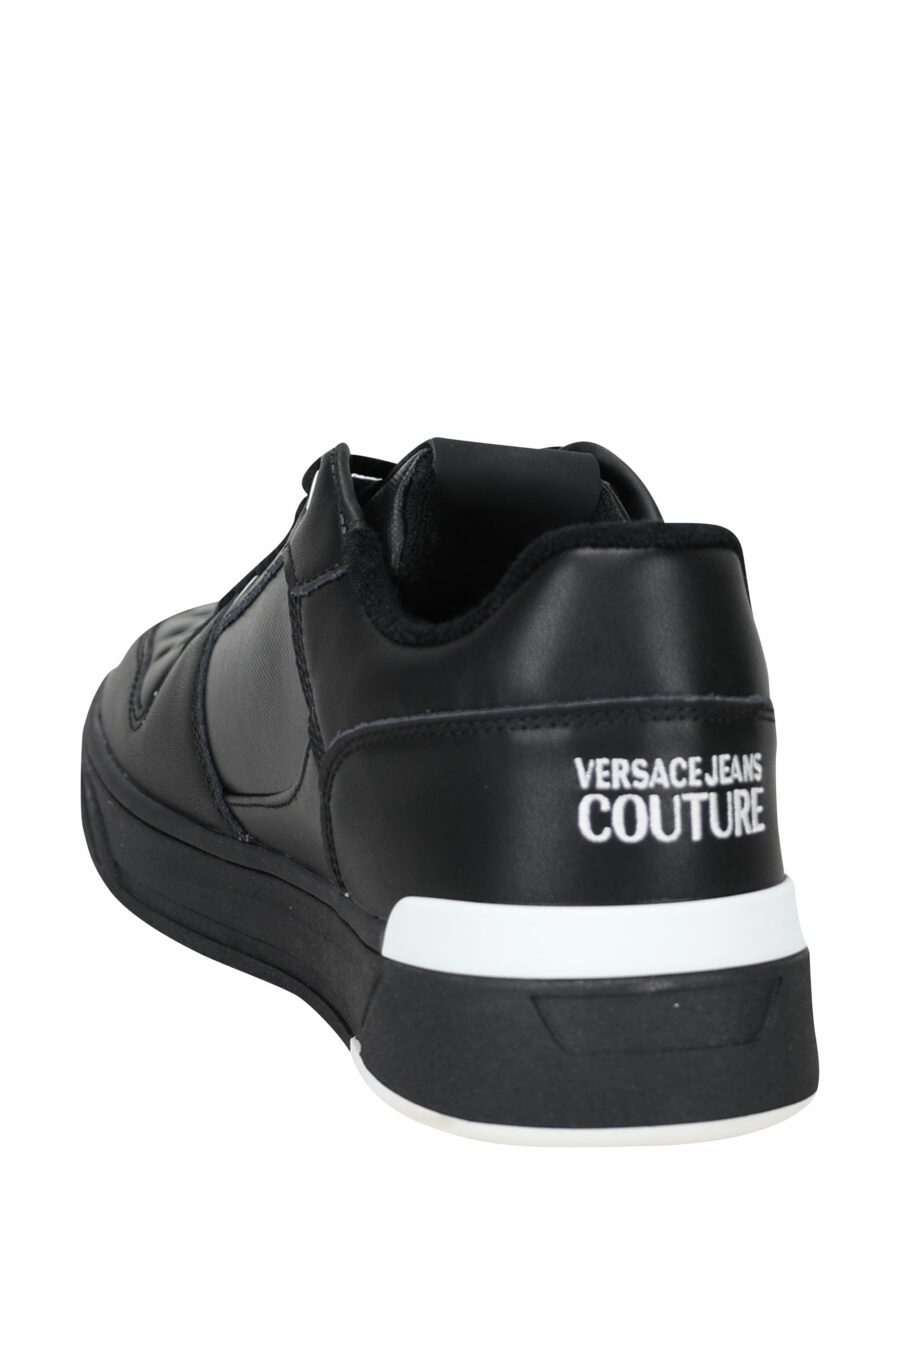 Versace Jeans Couture - Zapatillas negras con blanco y logo circular ...